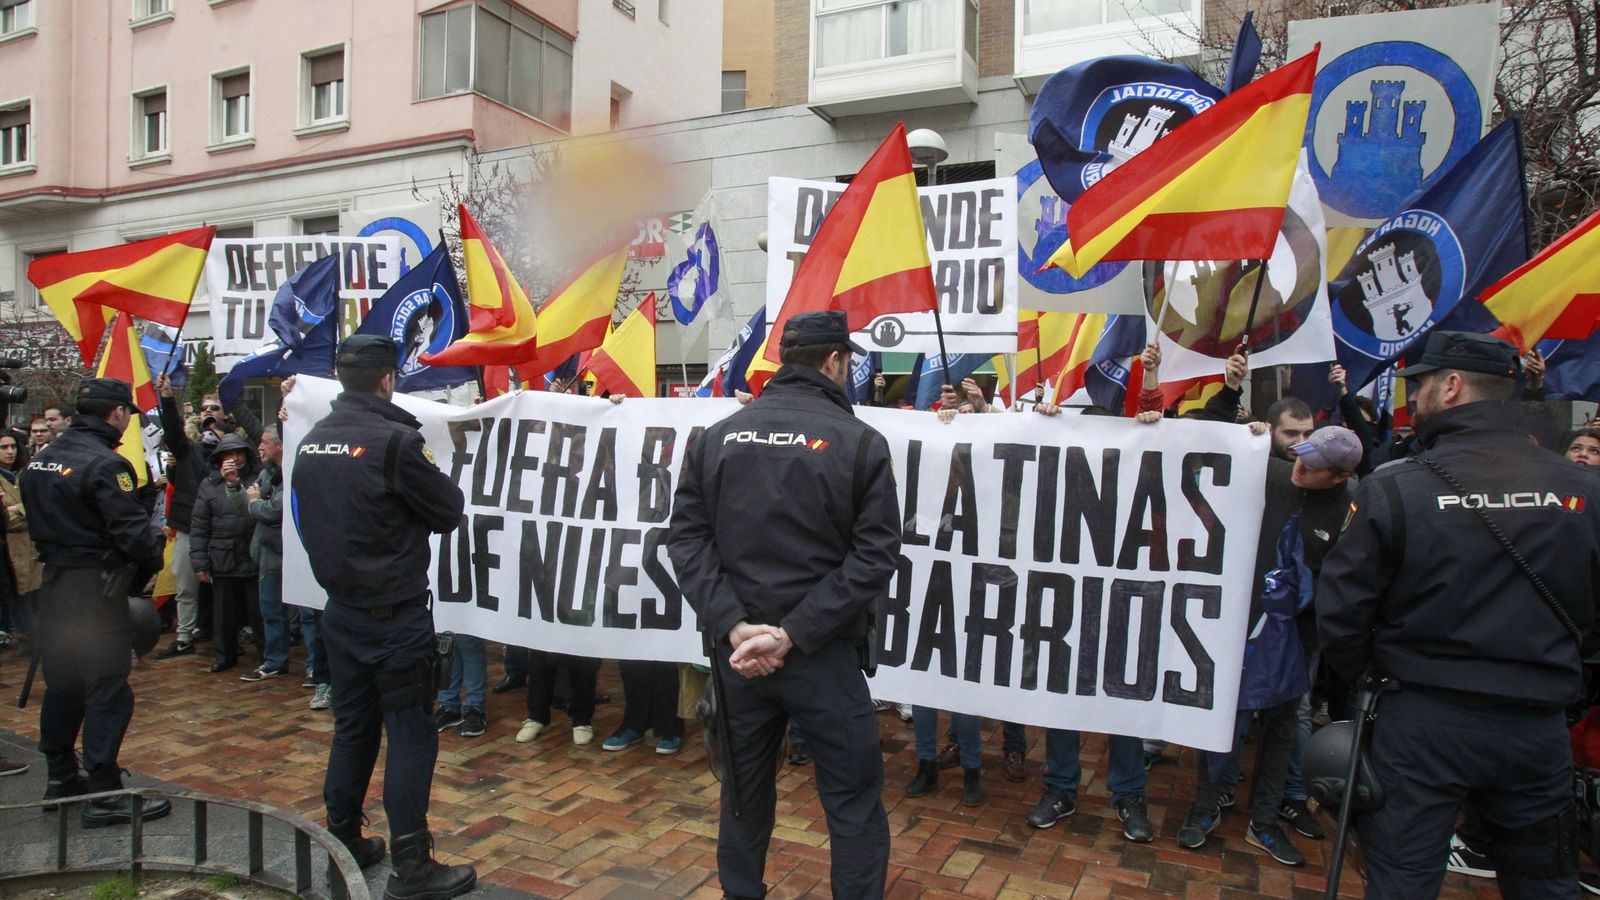 Foto: Manifestación de ultraderecha en Madrid contra las bandas latinas. (EFE)